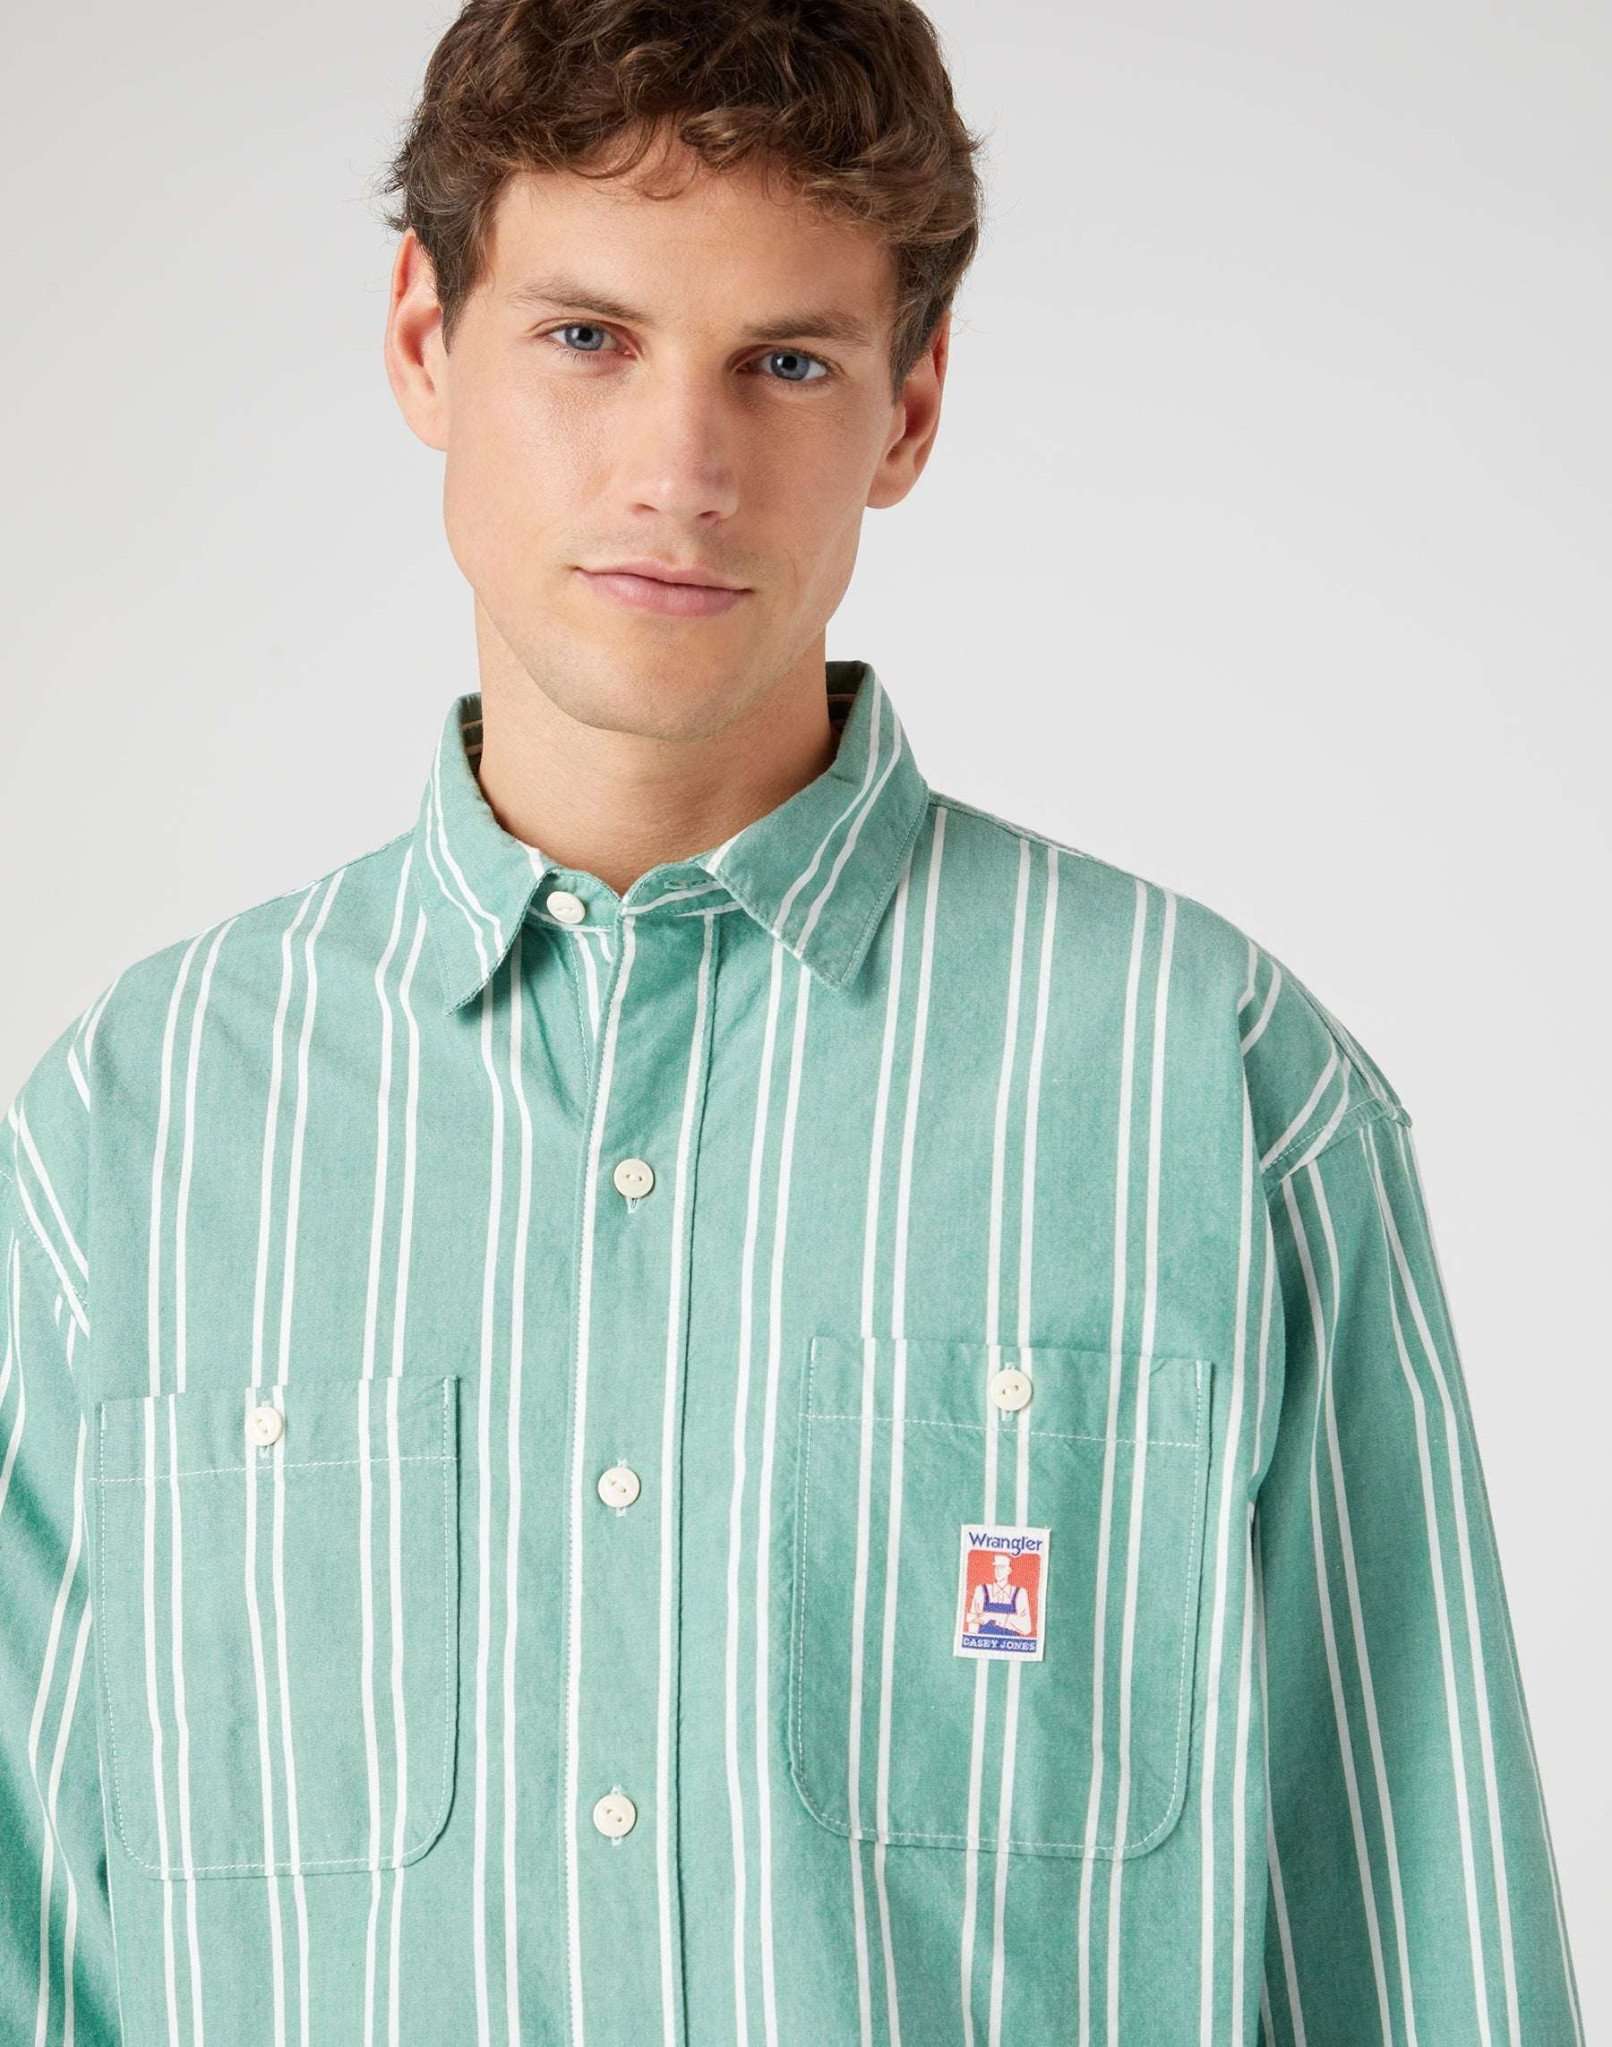 Casey Jones Two Pocket Utility Shirt in Pine Green Hemden Wrangler   